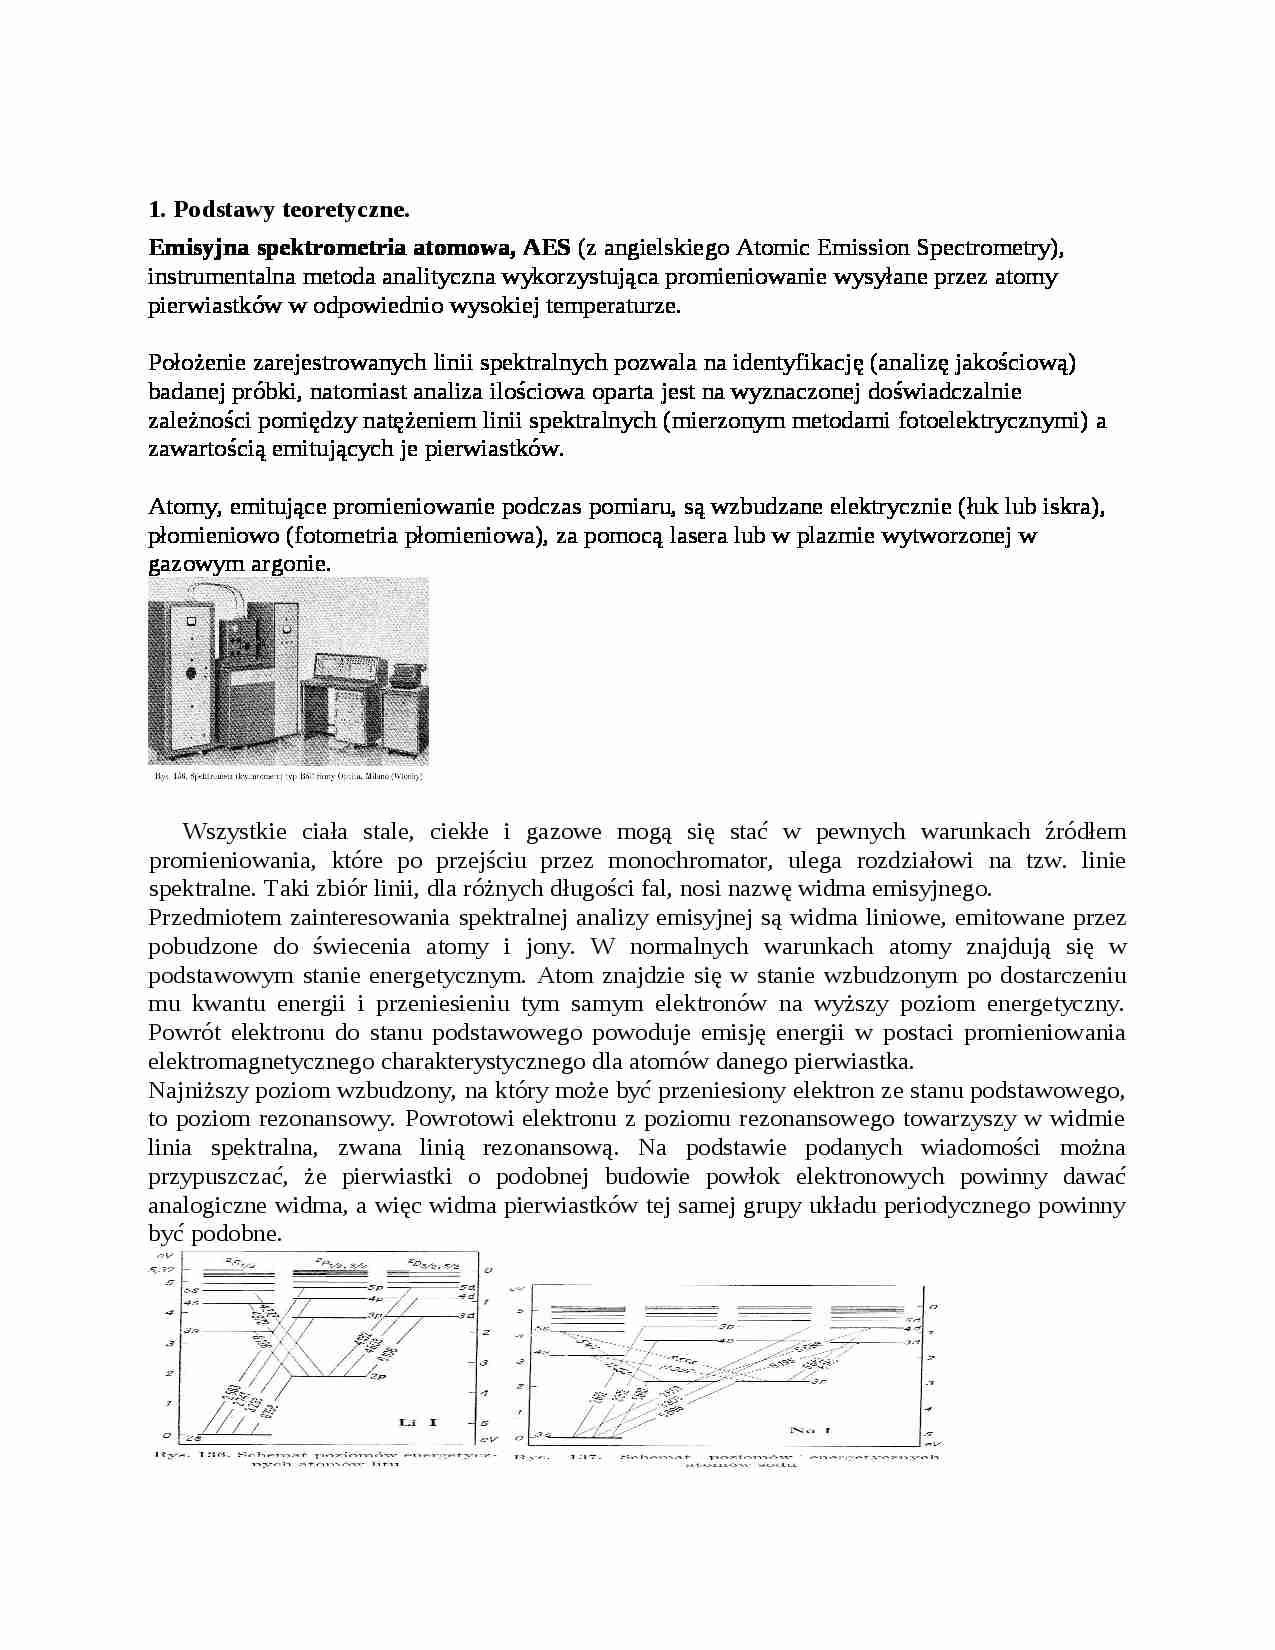 Emisyjna spektrometria atomowa - omówienie - strona 1